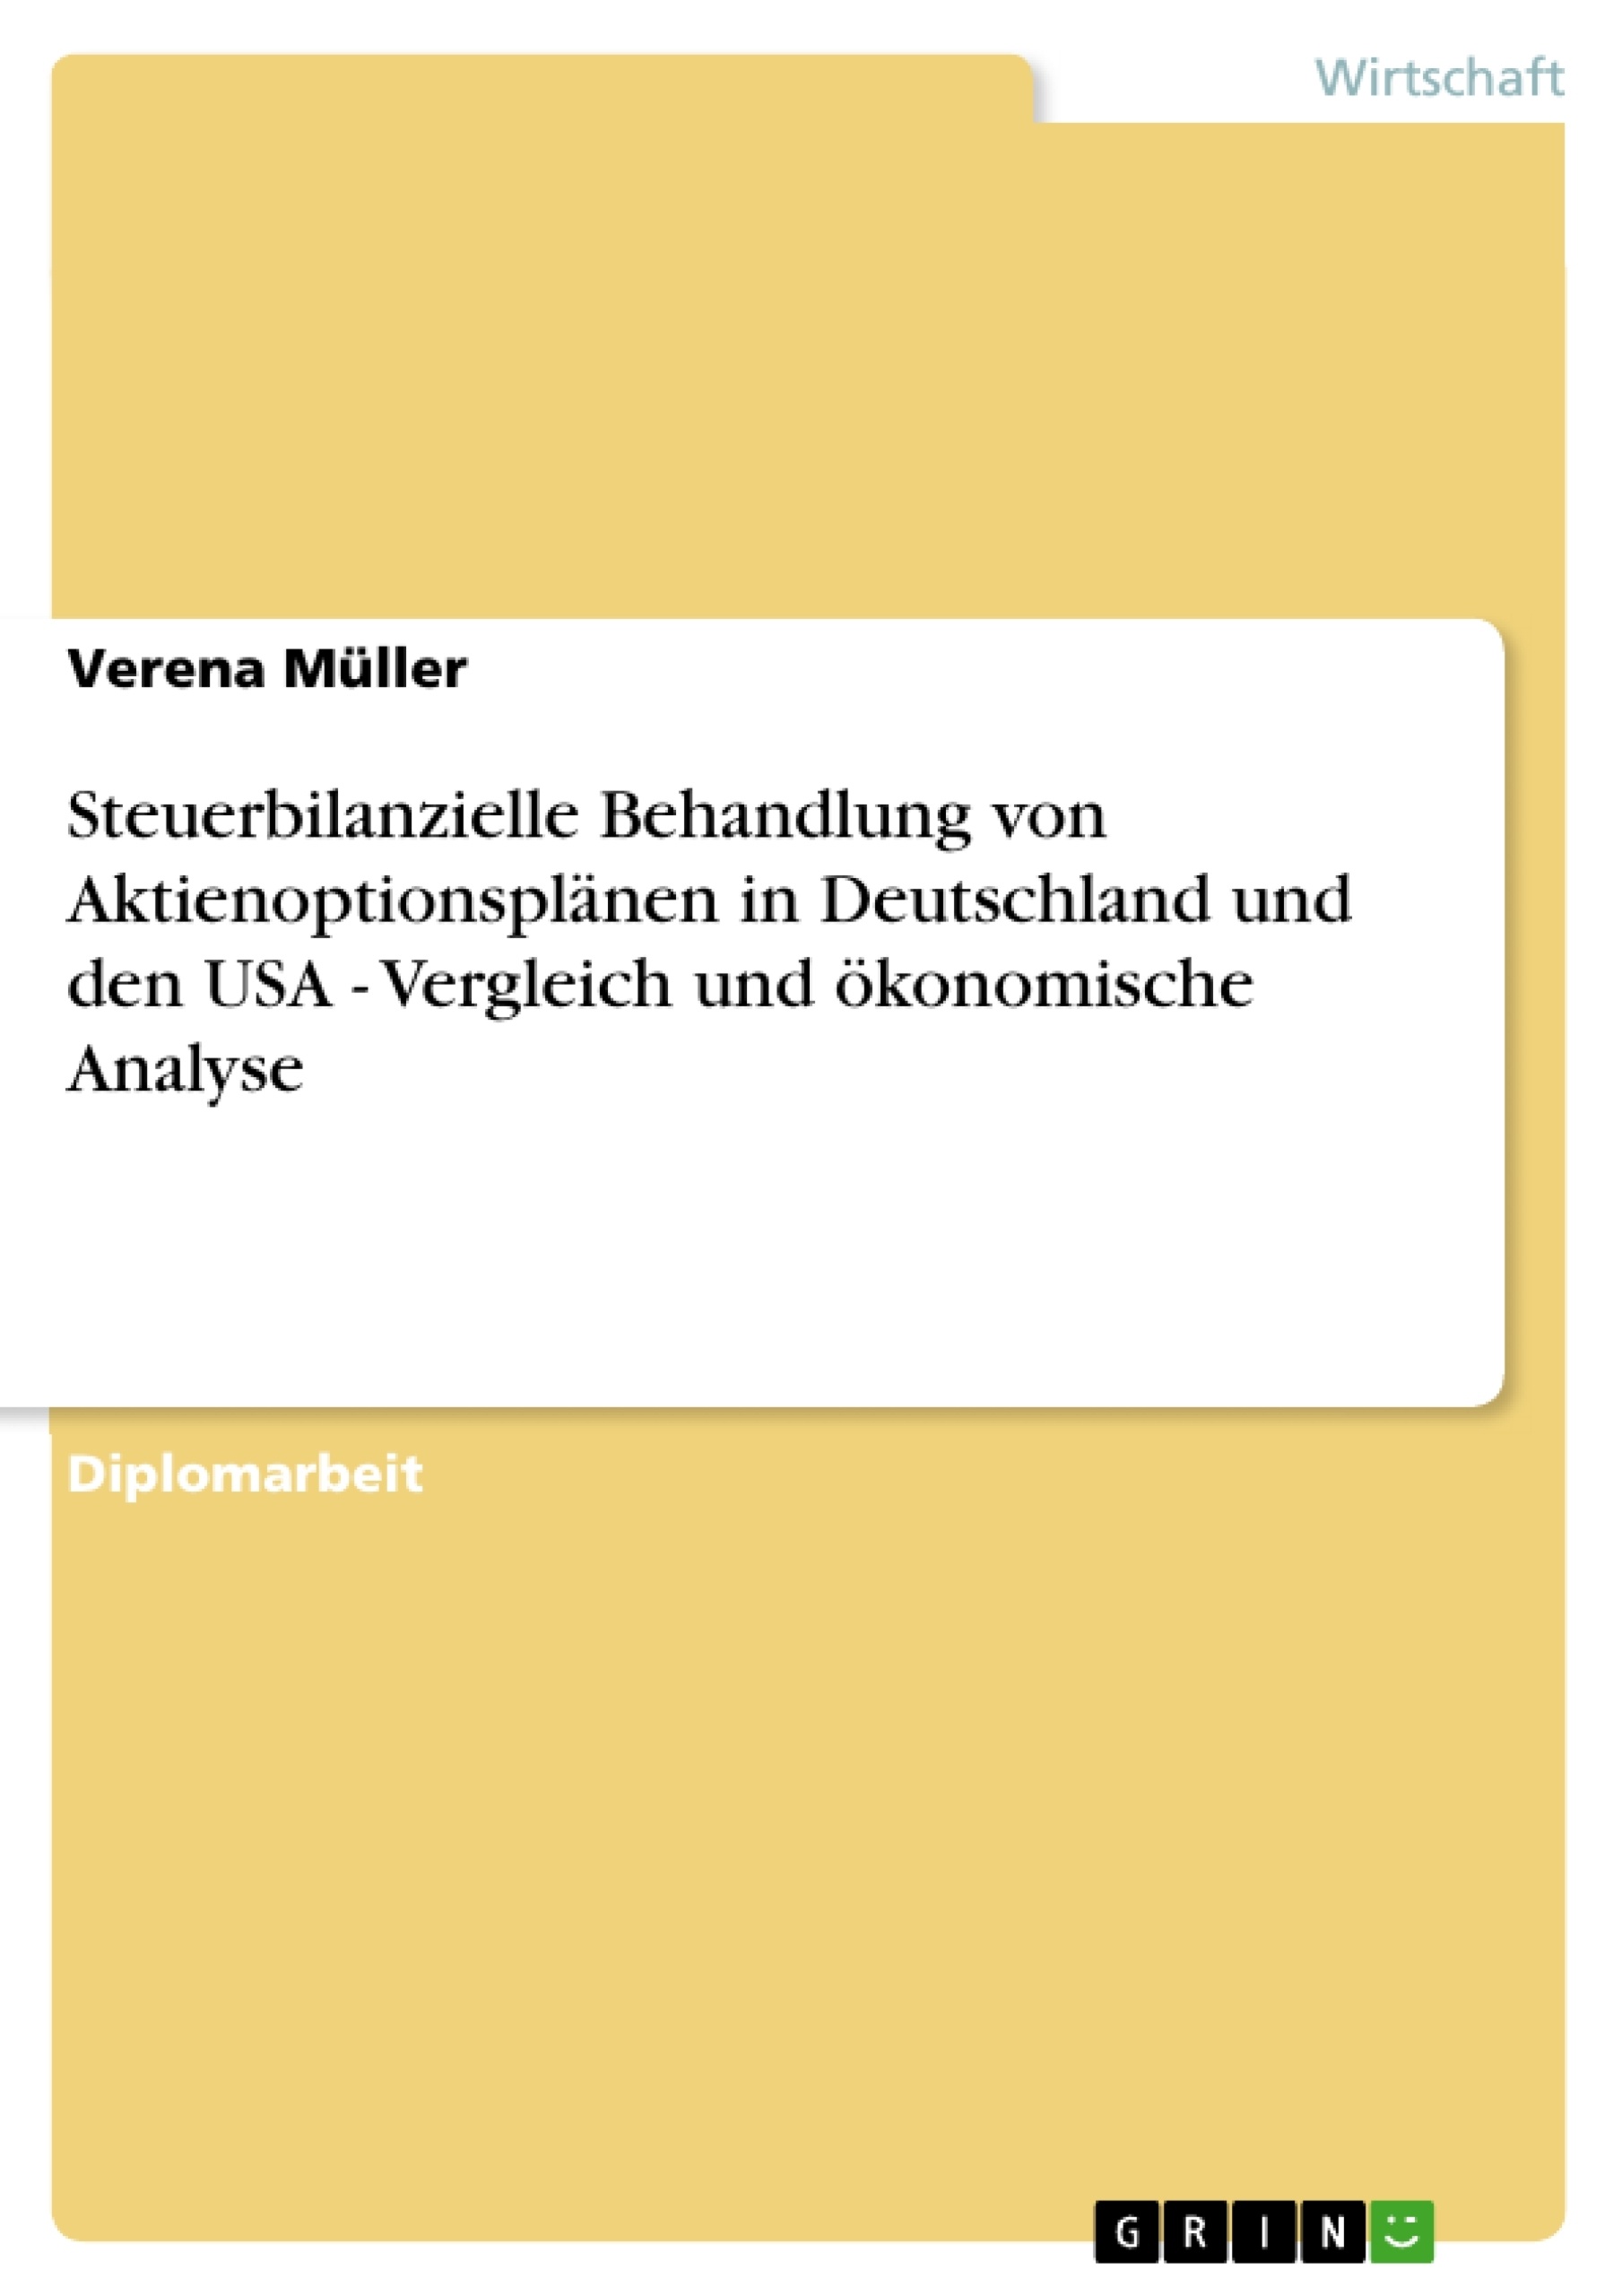 Titel:  Steuerbilanzielle Behandlung von Aktienoptionsplänen in Deutschland und den USA - Vergleich und ökonomische Analyse